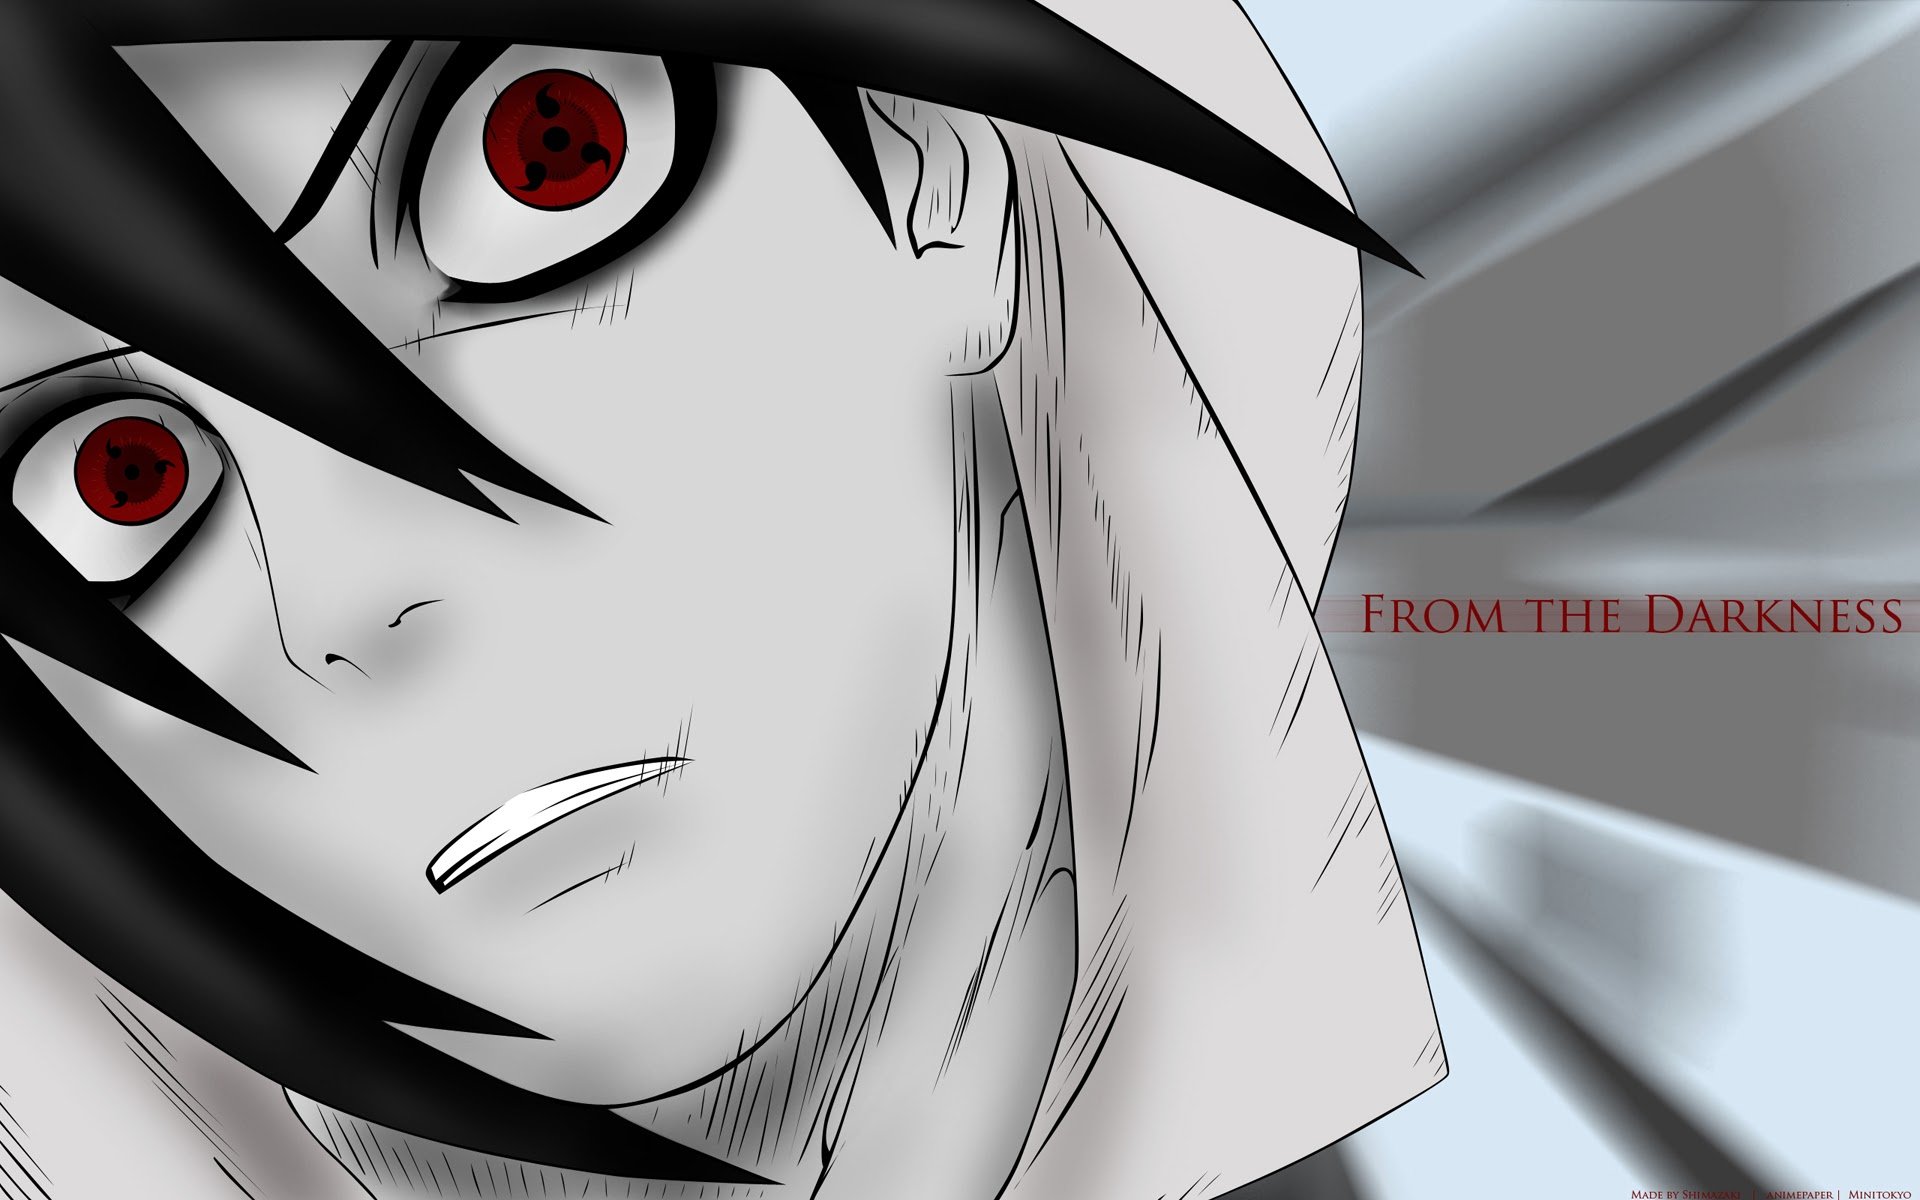 sasuke uchiha mangekyou sharingan eyes image hd anime wallpaper